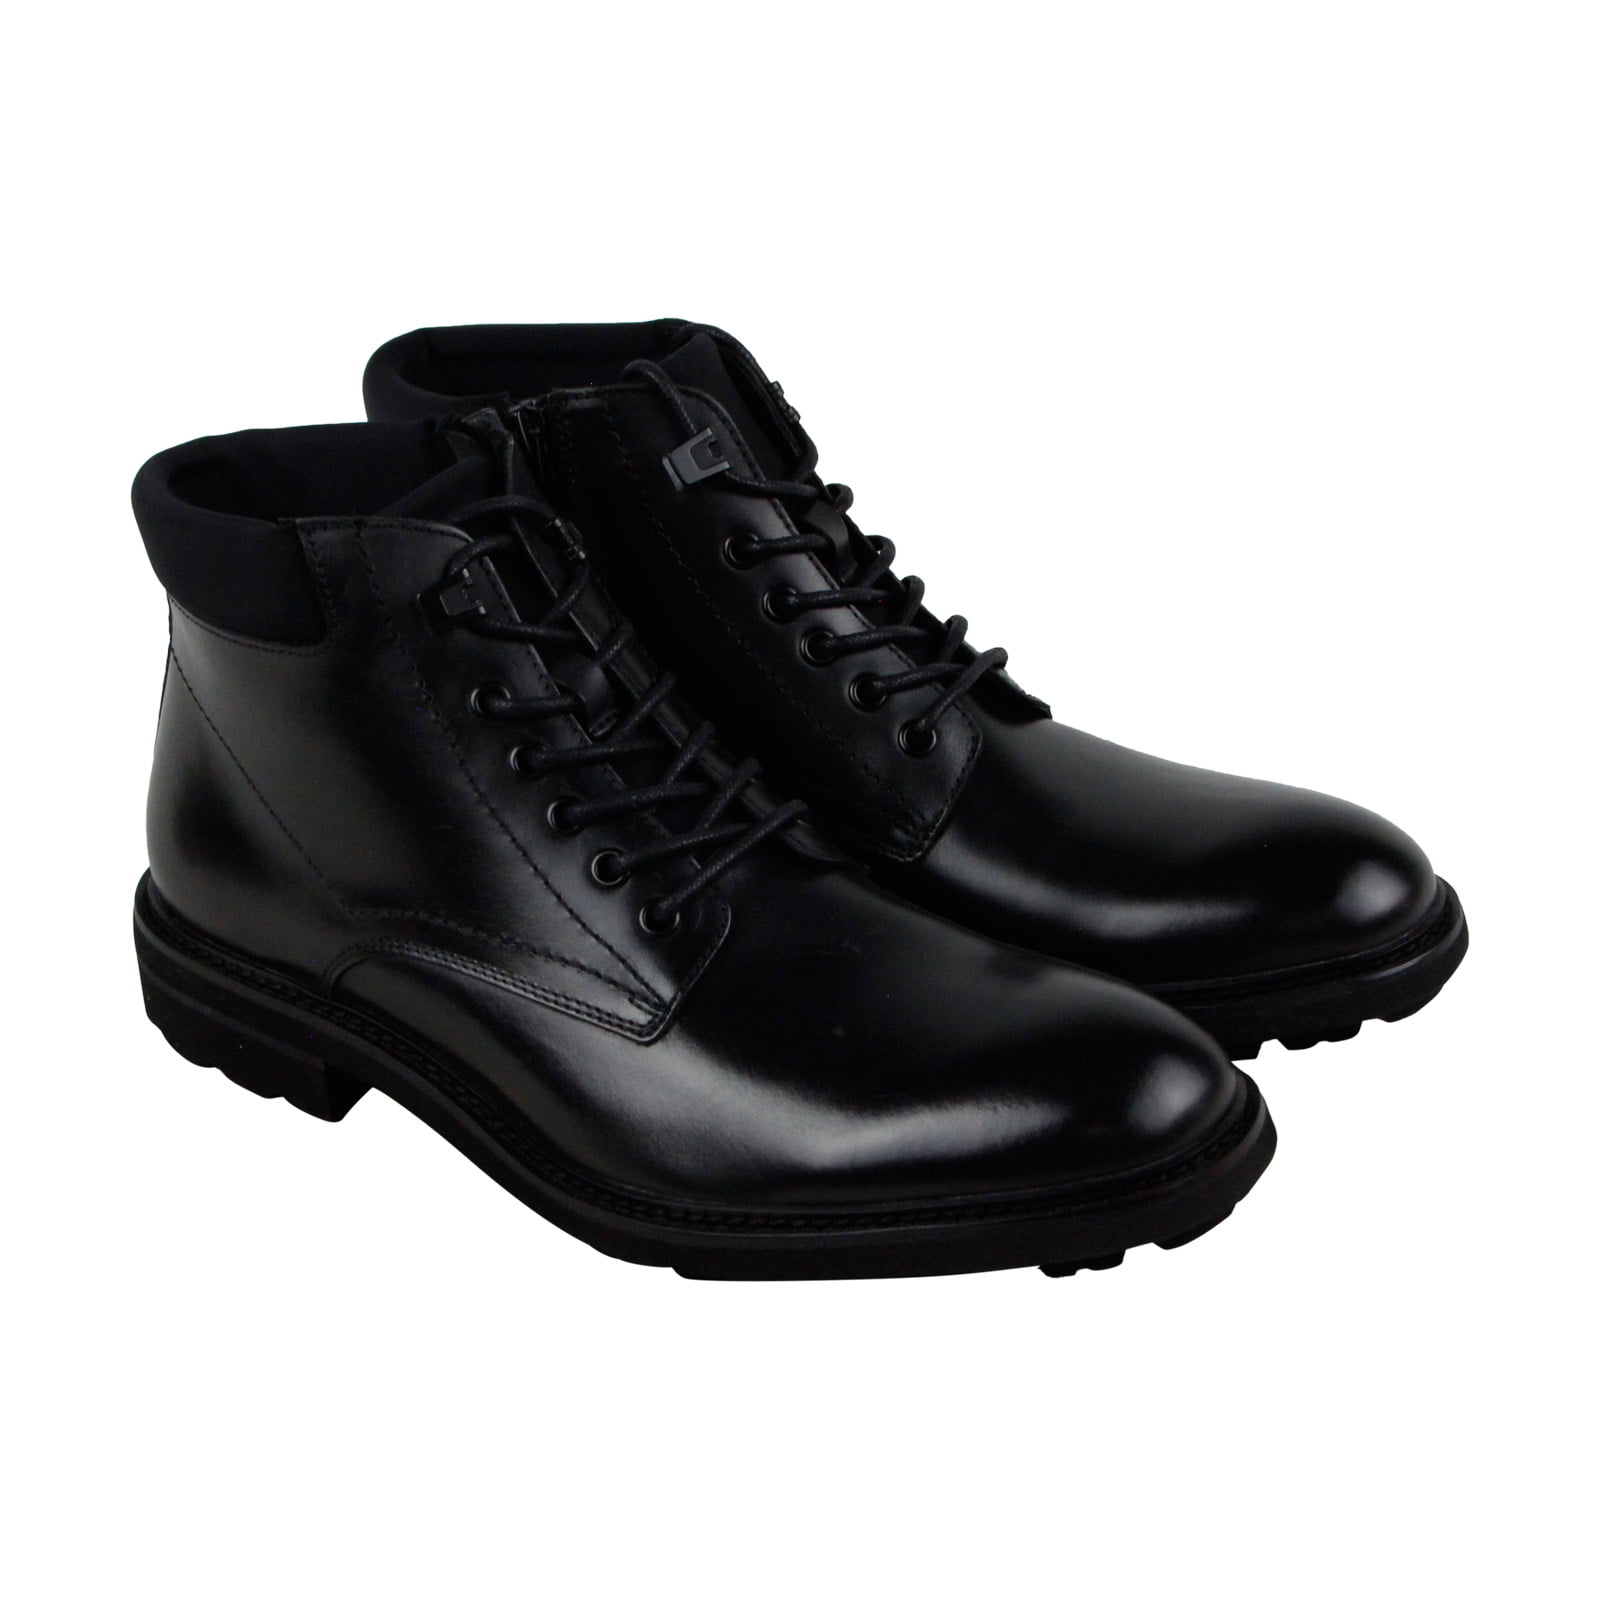 mens casual dress boots black